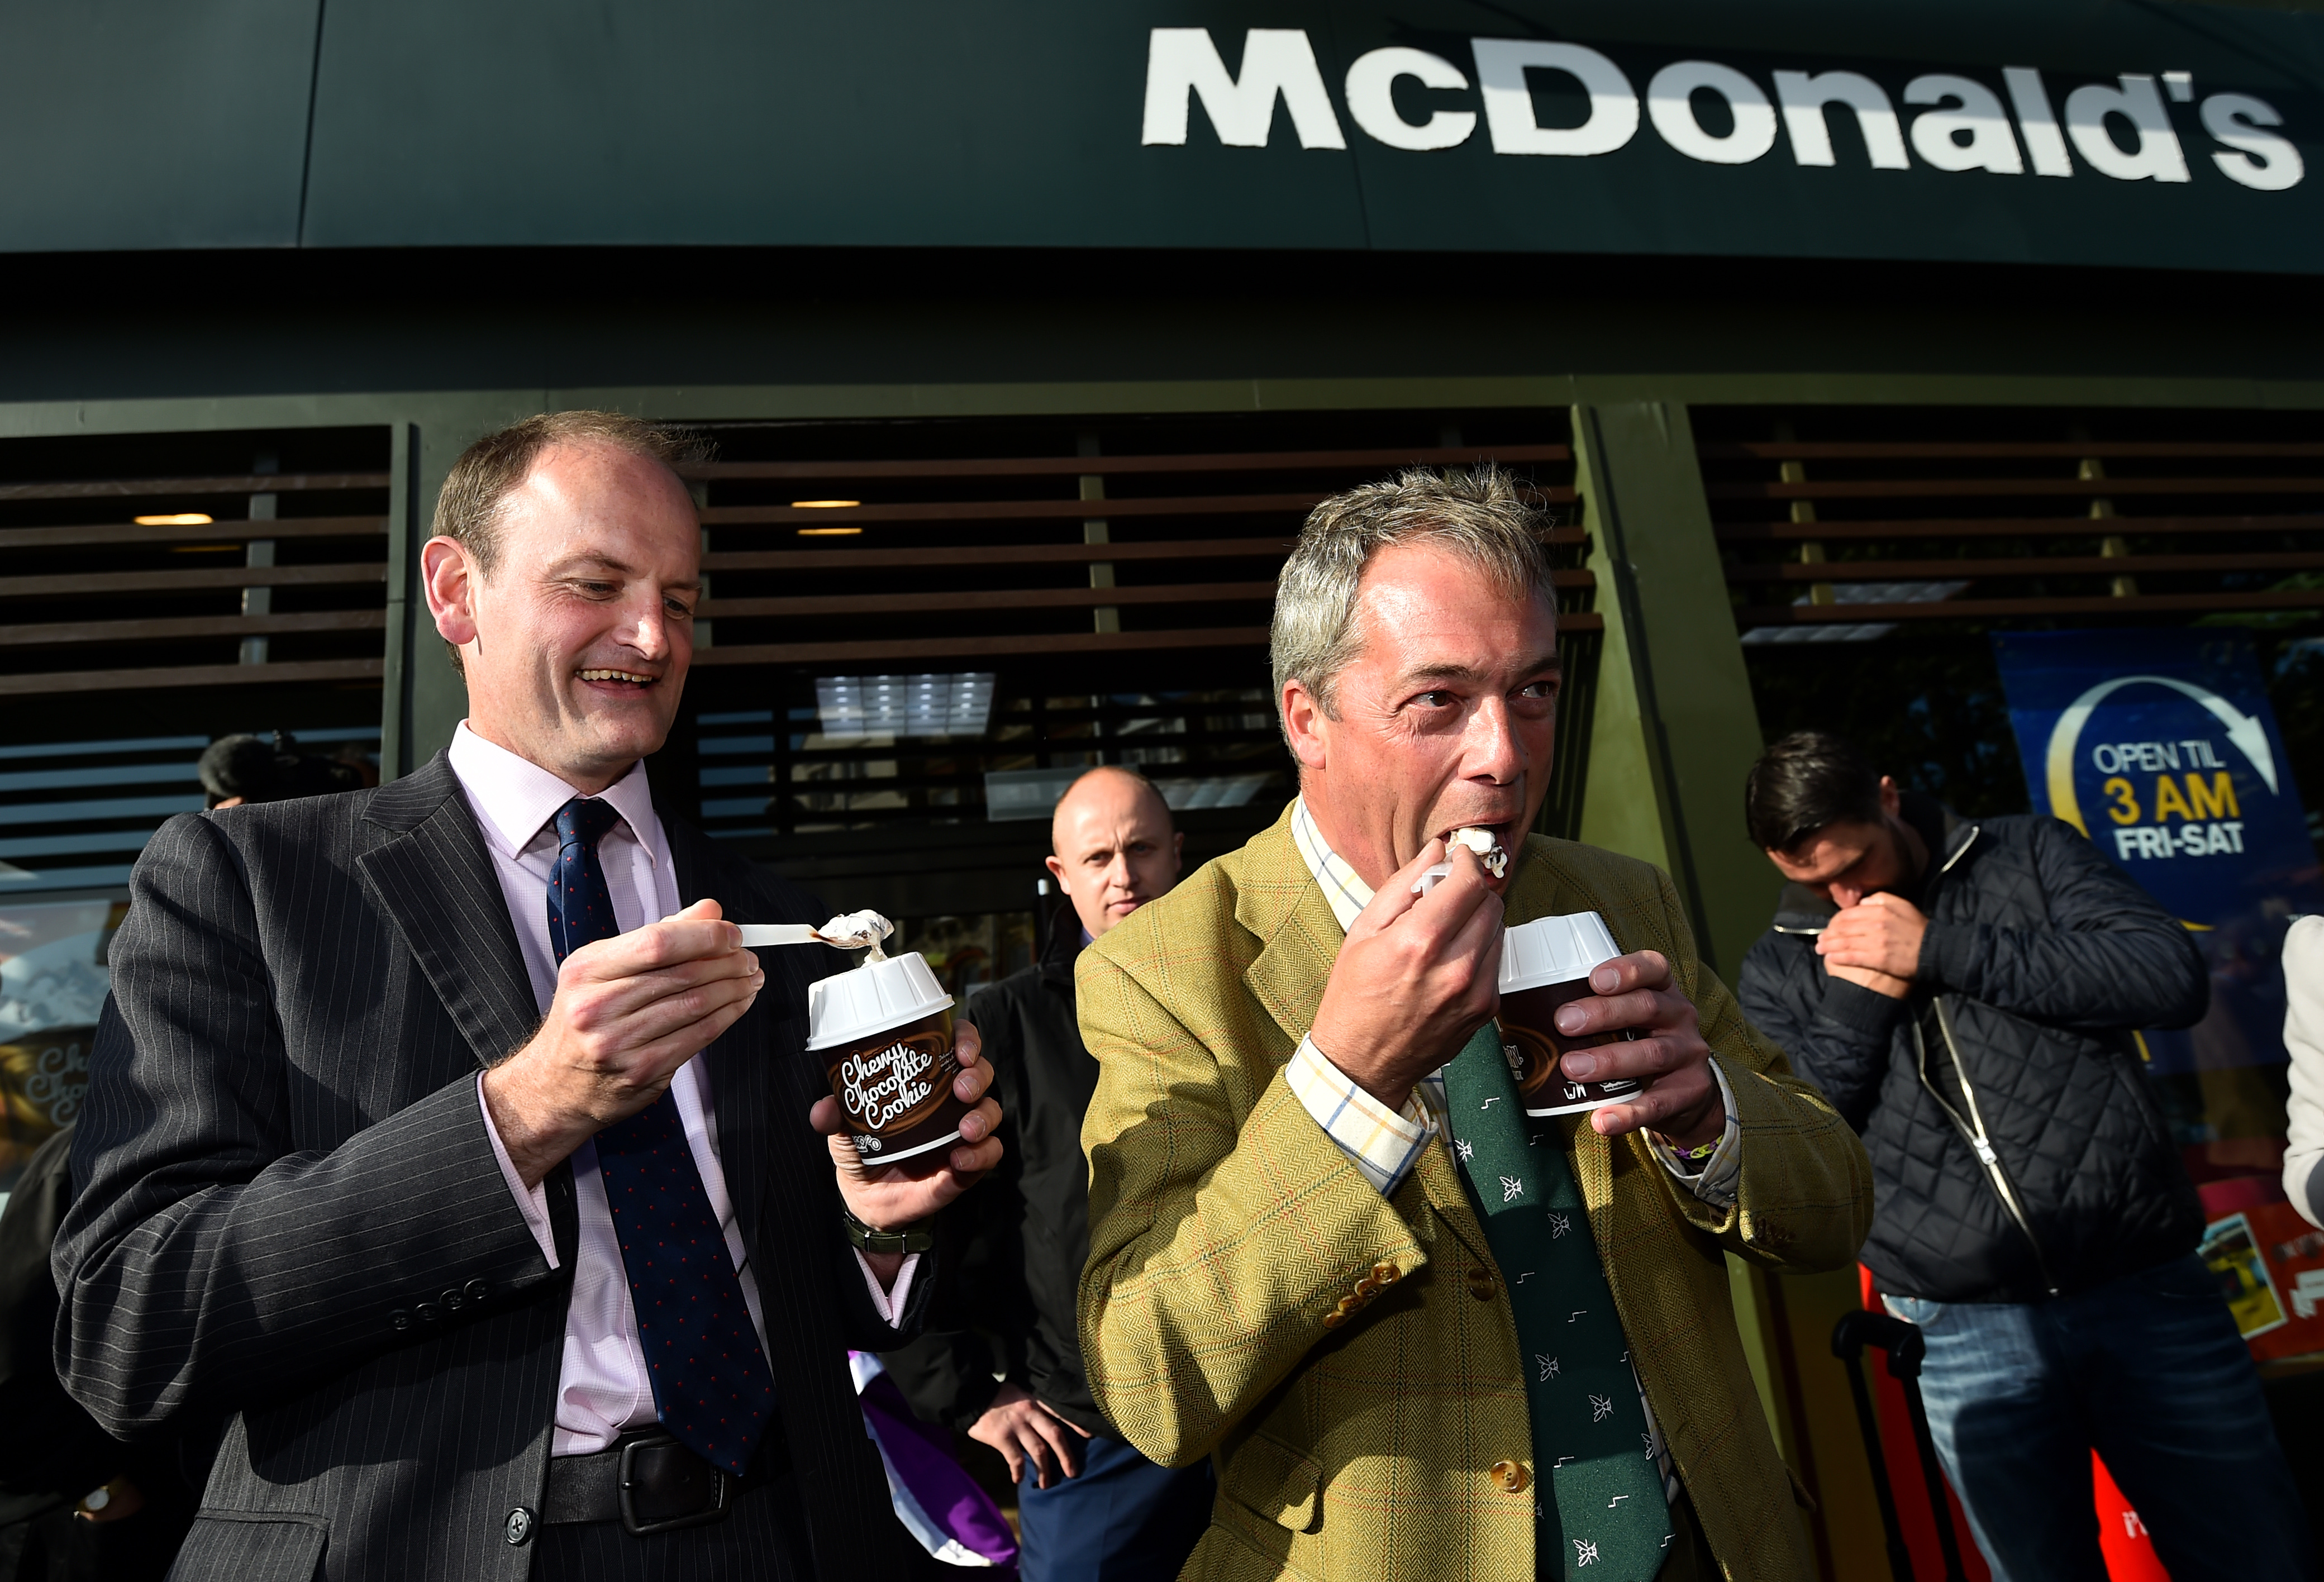 A rendőrség  arra kérte a McDonald's-ot, hogy ne áruljon fagyit Nigel Farage kampánygyűlése közelében, mert még megdobálnák